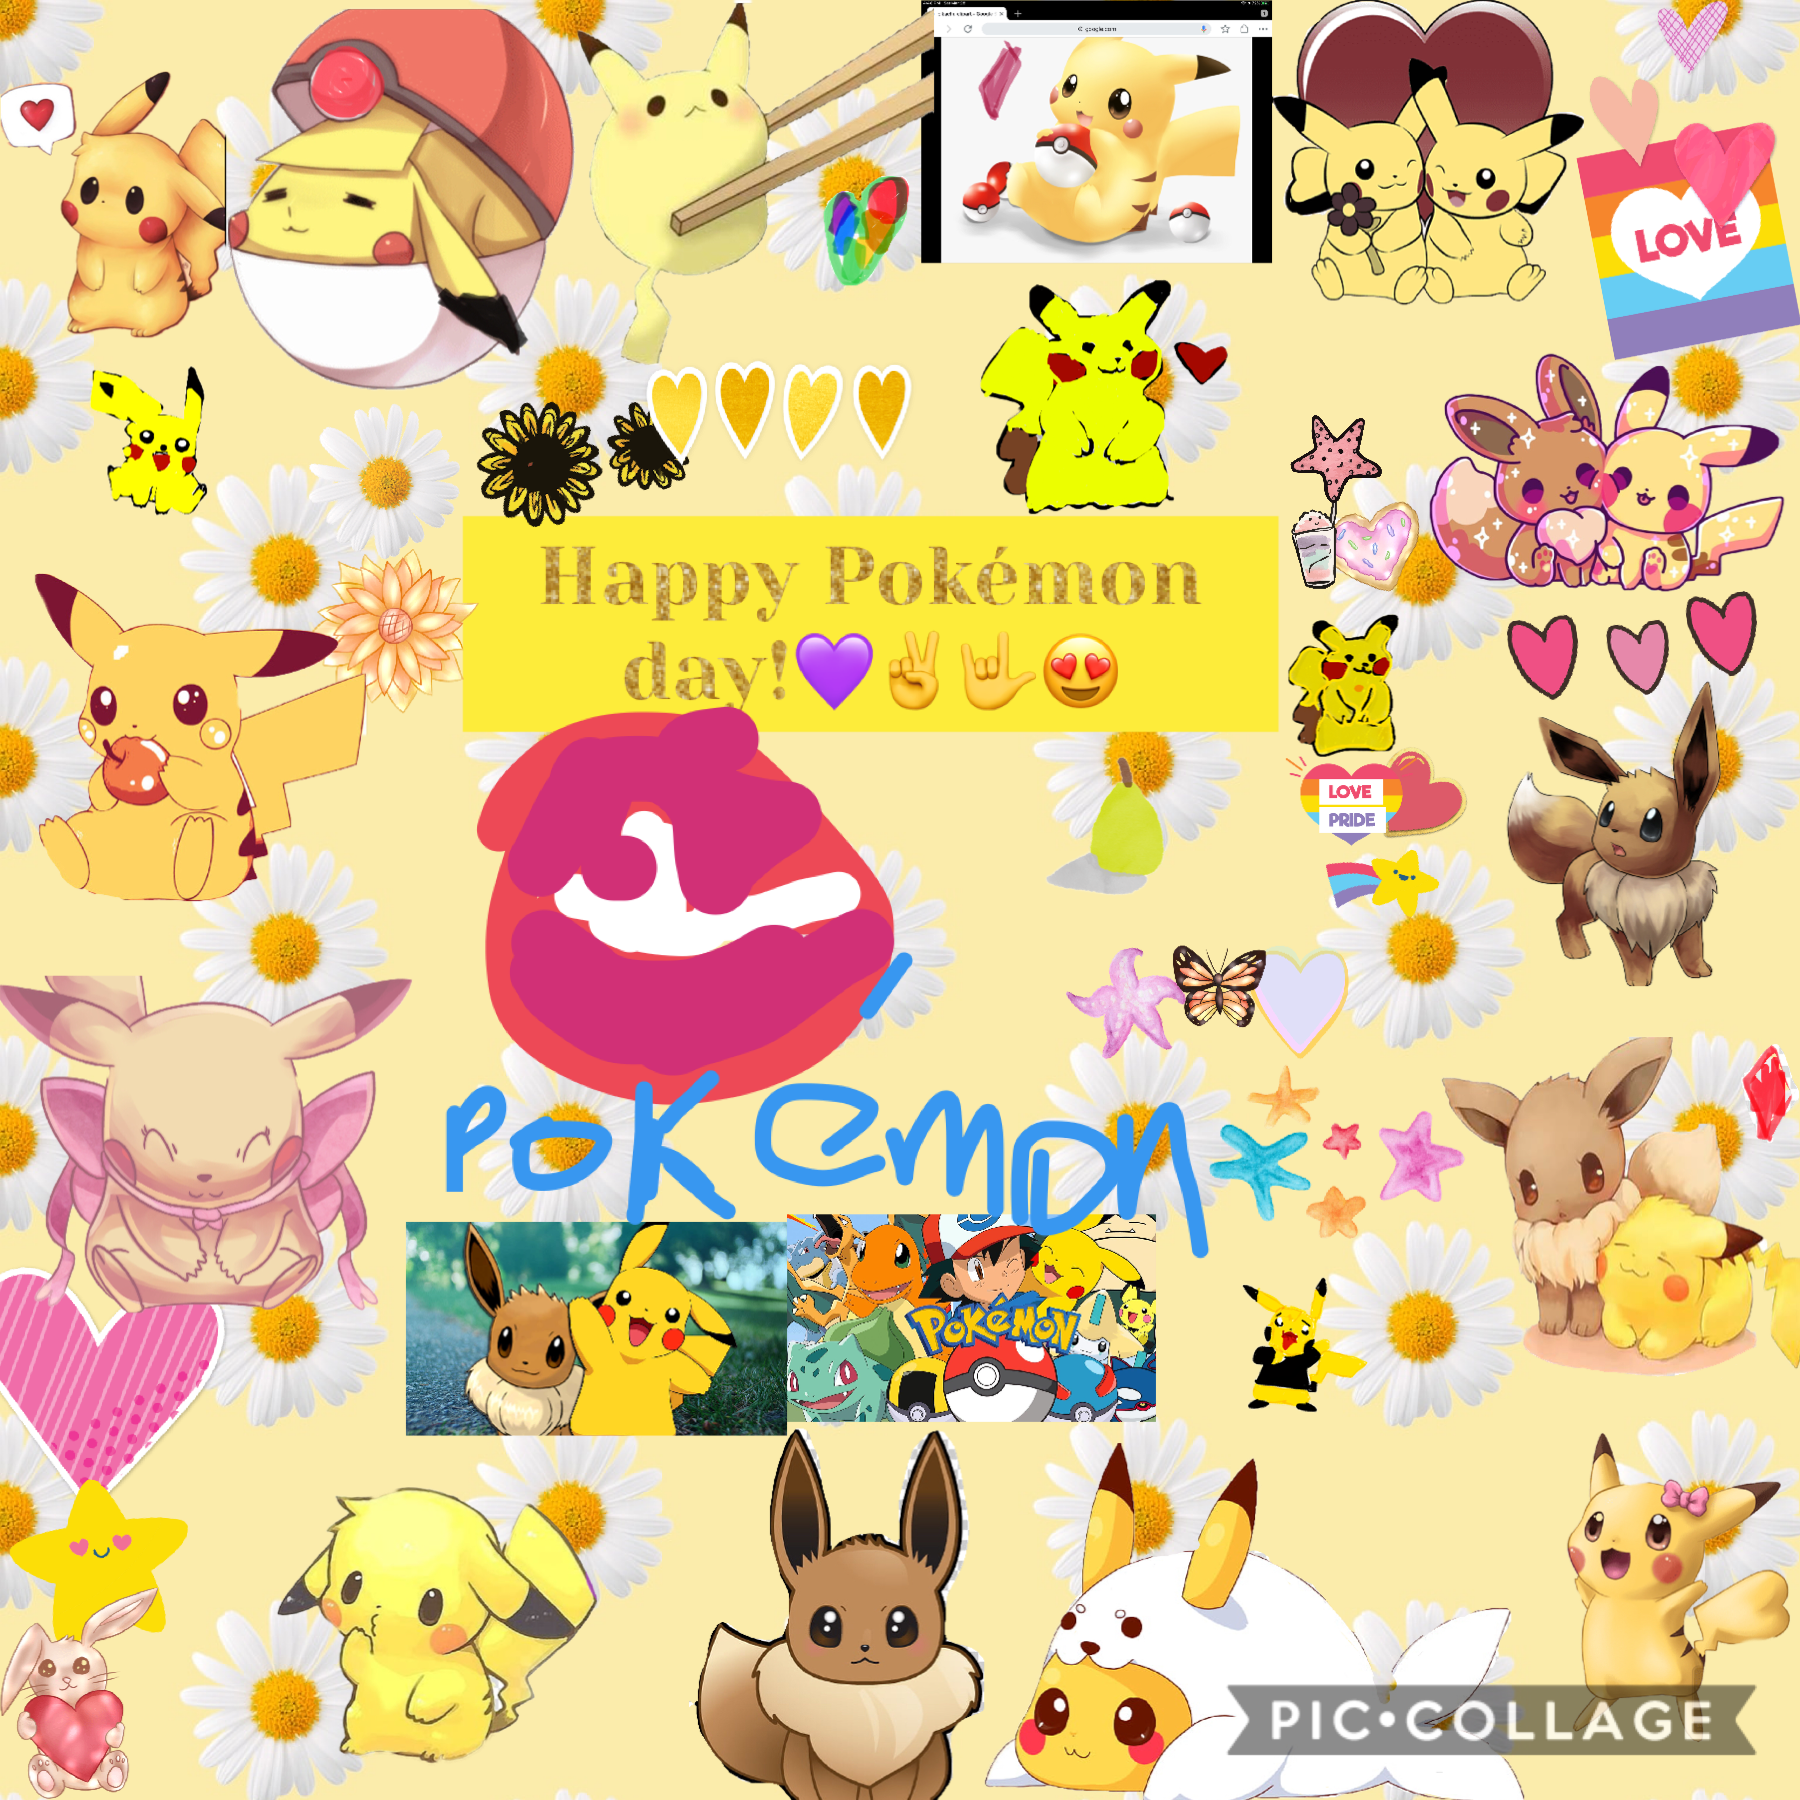 Pokémon day!